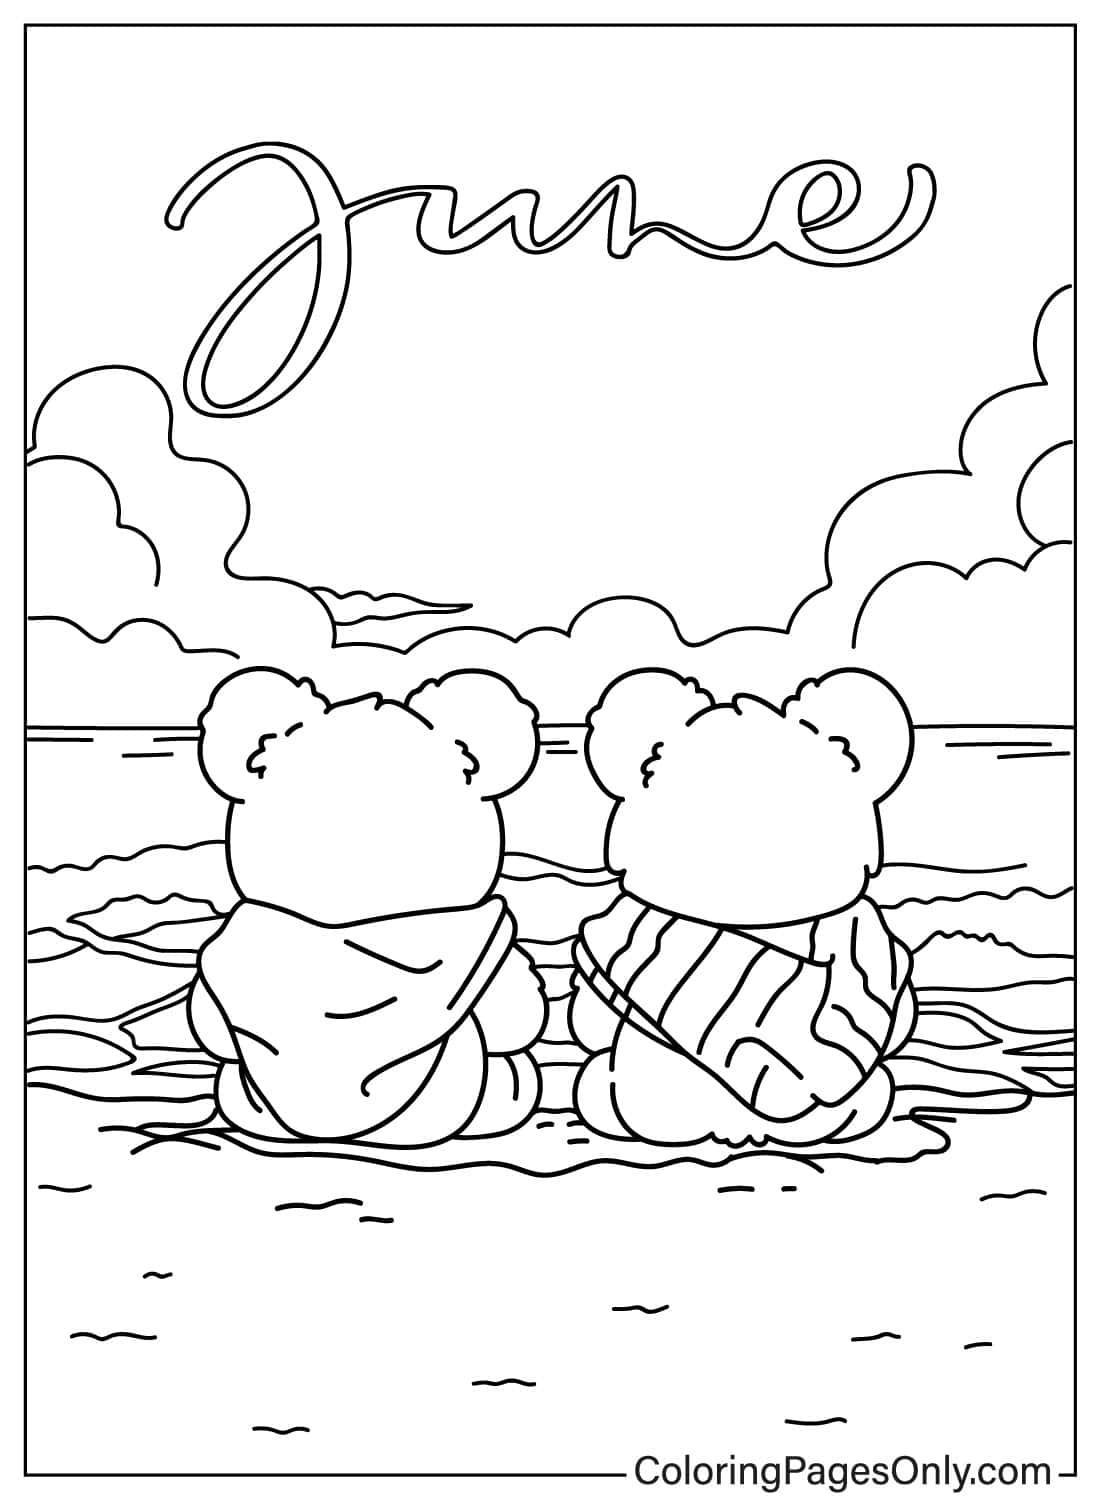 Два медведя сидят и смотрят на море с июня